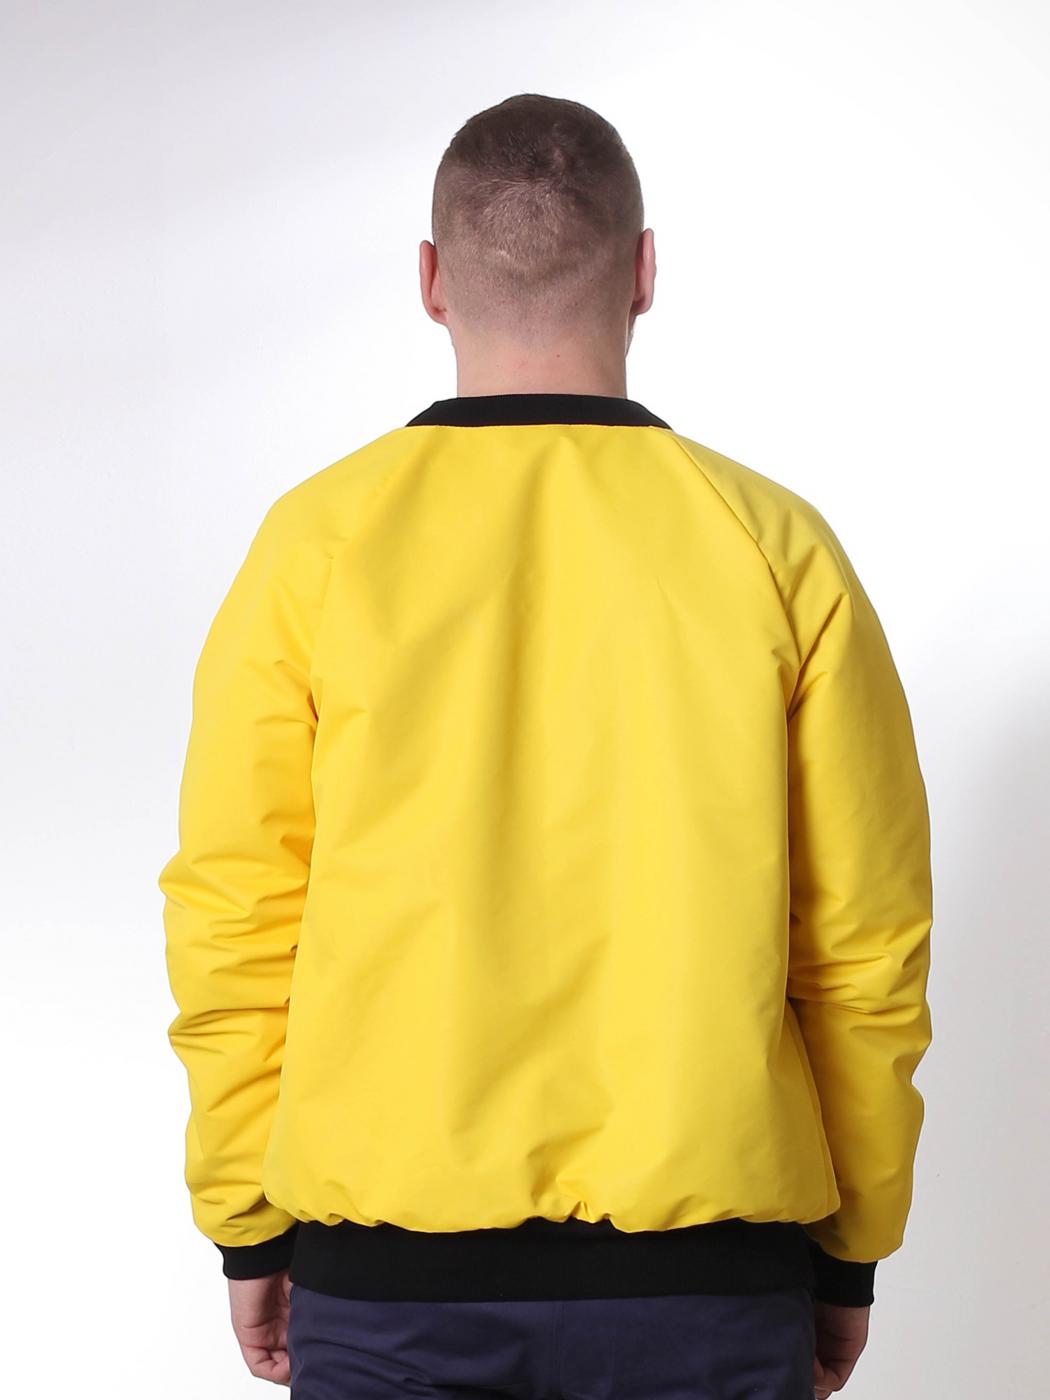 Куртка-бомбер двухсторонний Black/Yellow утеп Custom Wear - Фото 1